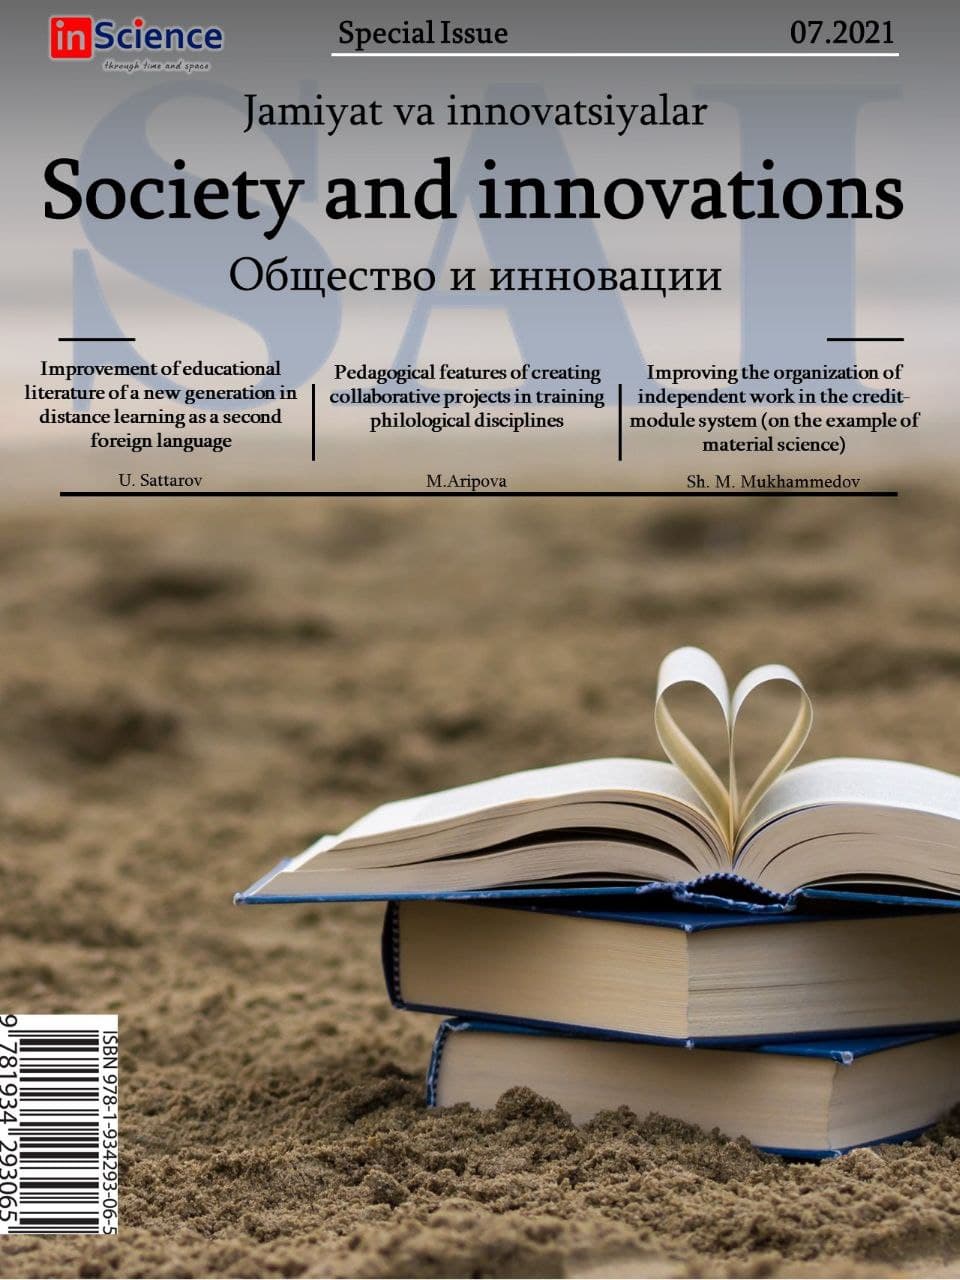 						Показать Том 2 № 7/S (2021): Спецвыпуск междисциплинарного электронного научного журнала «Общество и инновации»
					